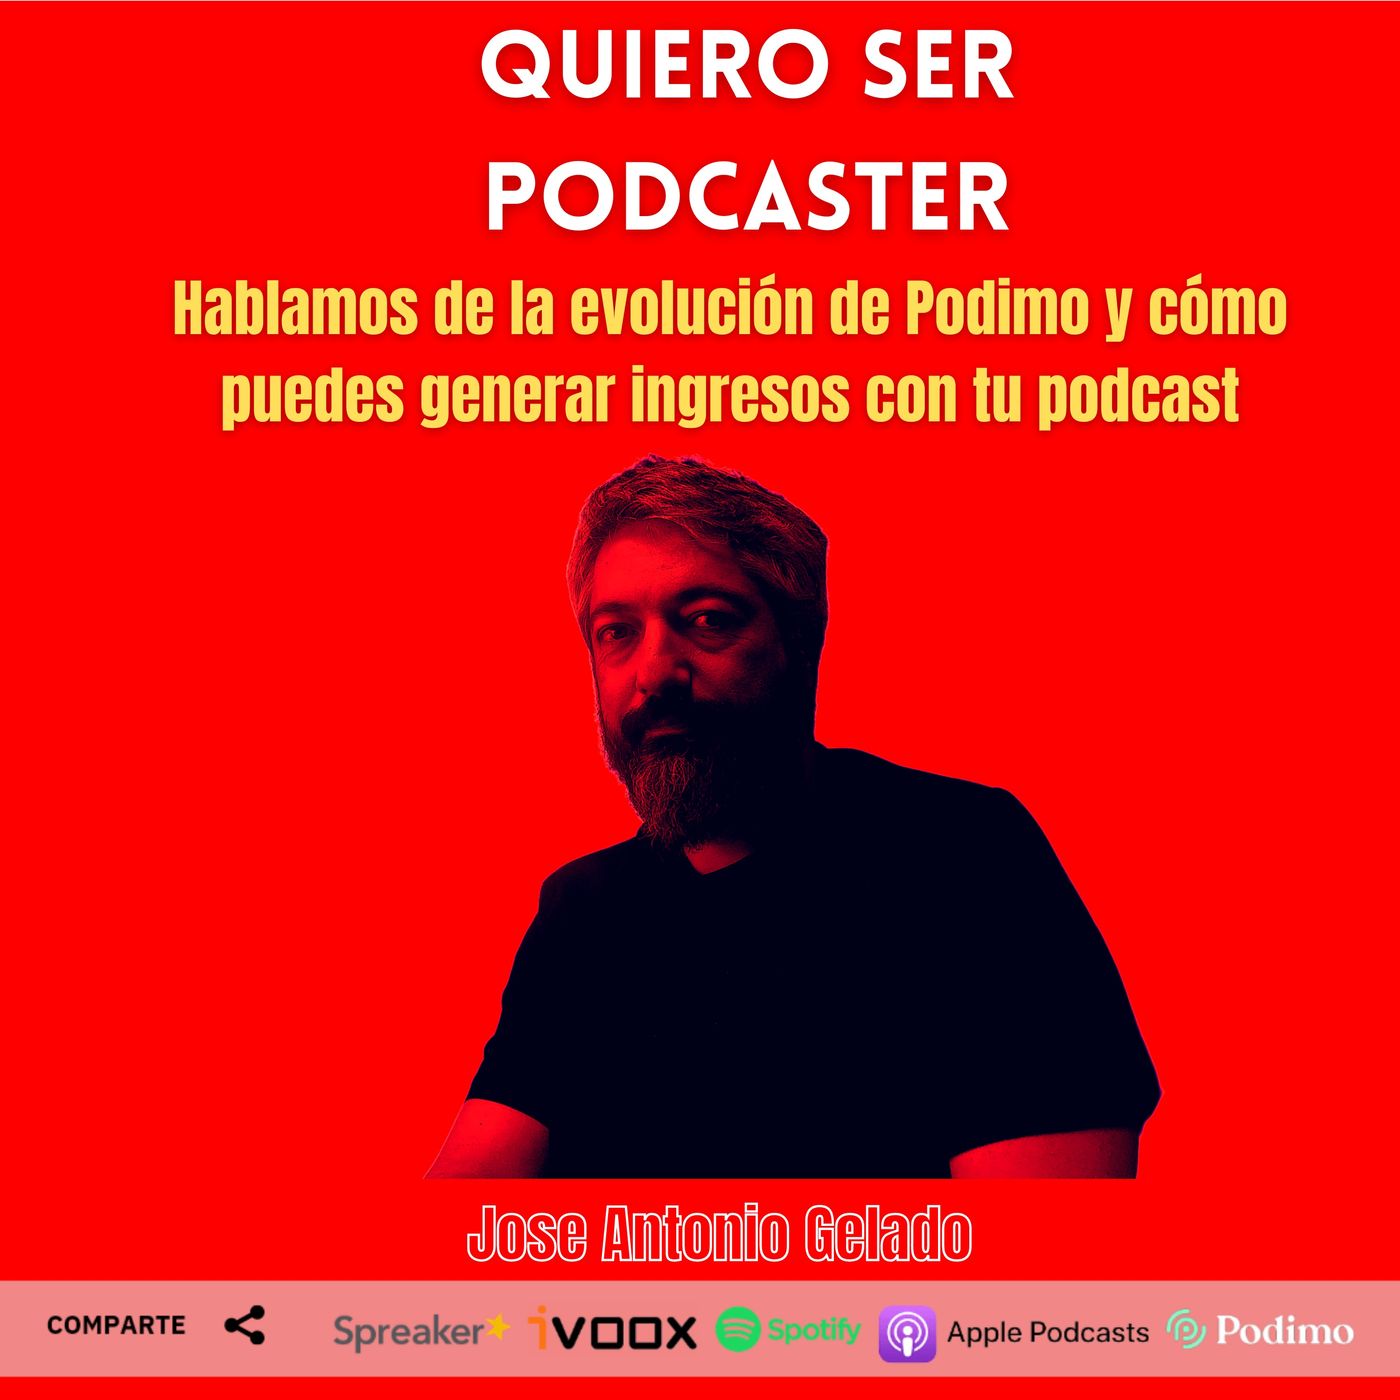 La evolución de @PodimoSpain y cómo generar ingresos con tu podcast. Hablamos con J.A. Gelado @jagelado